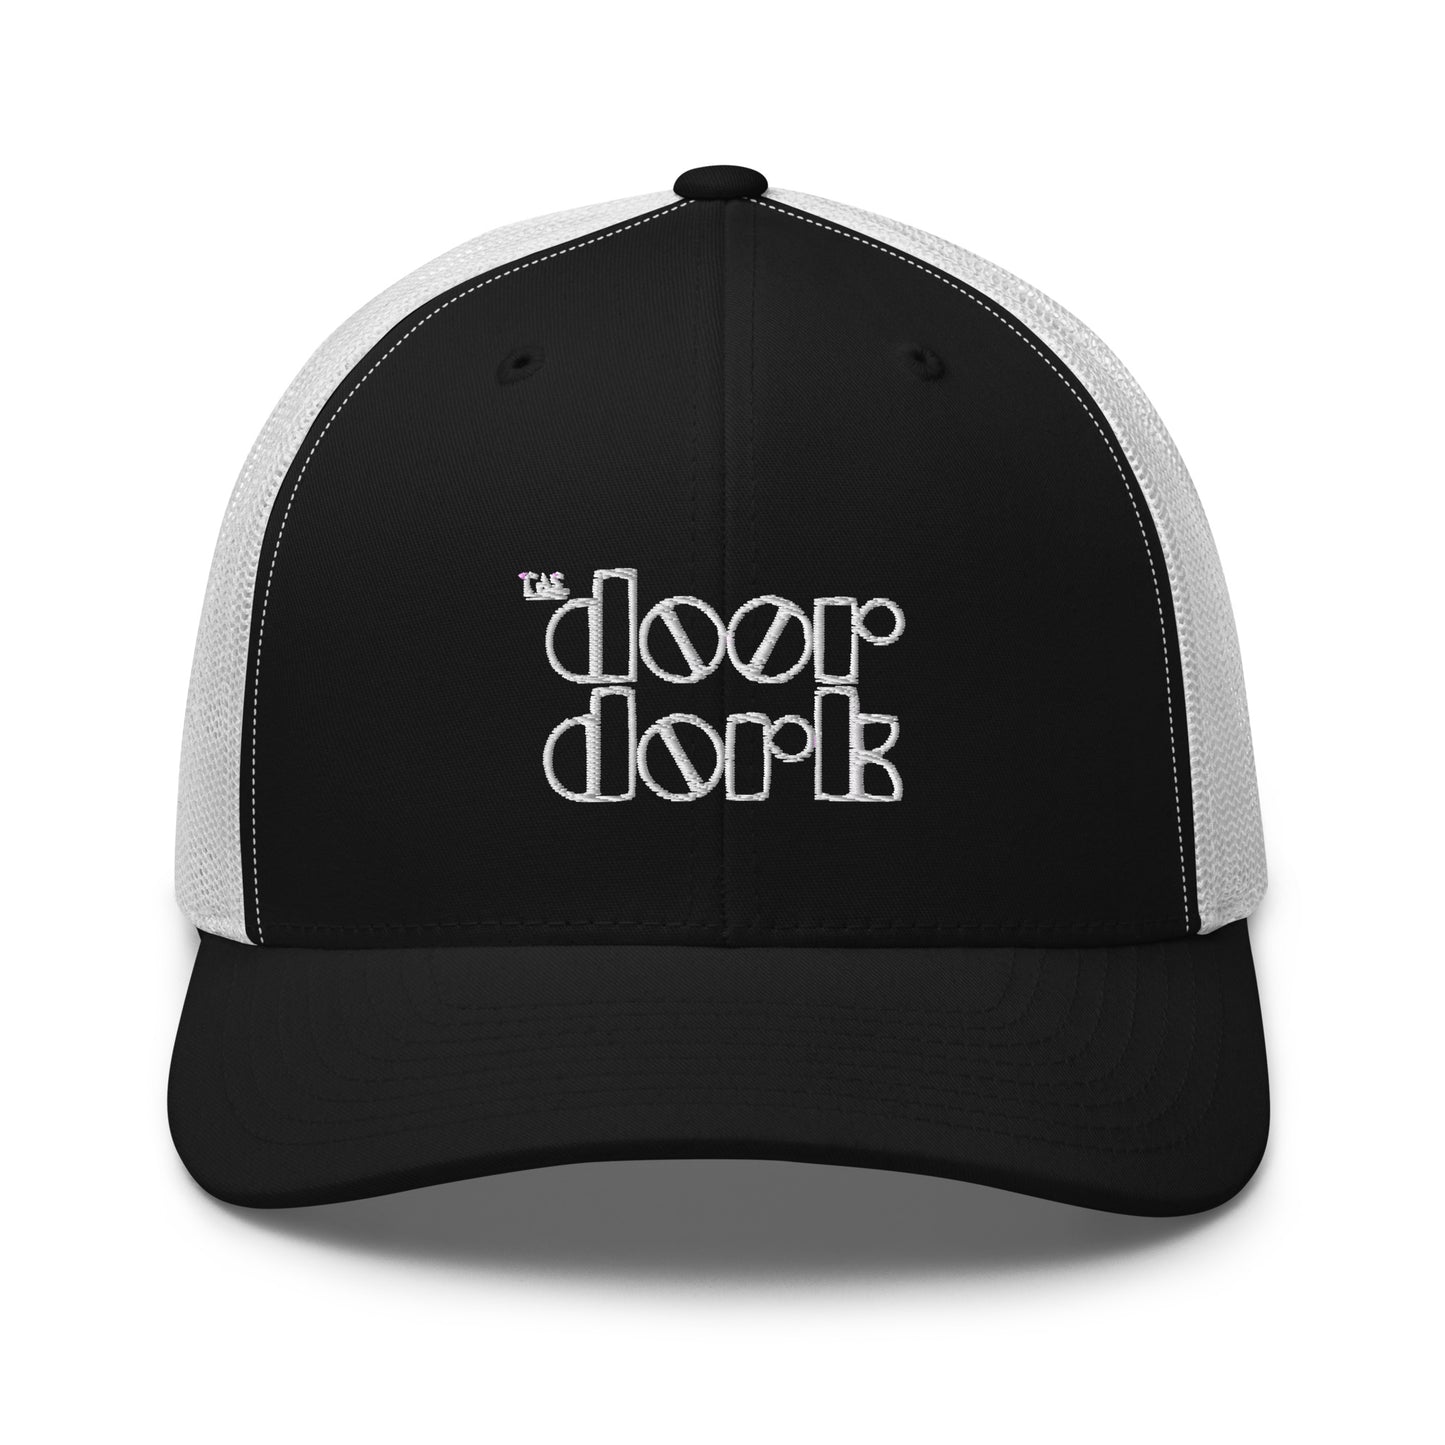 The Door Dork Trucker Cap